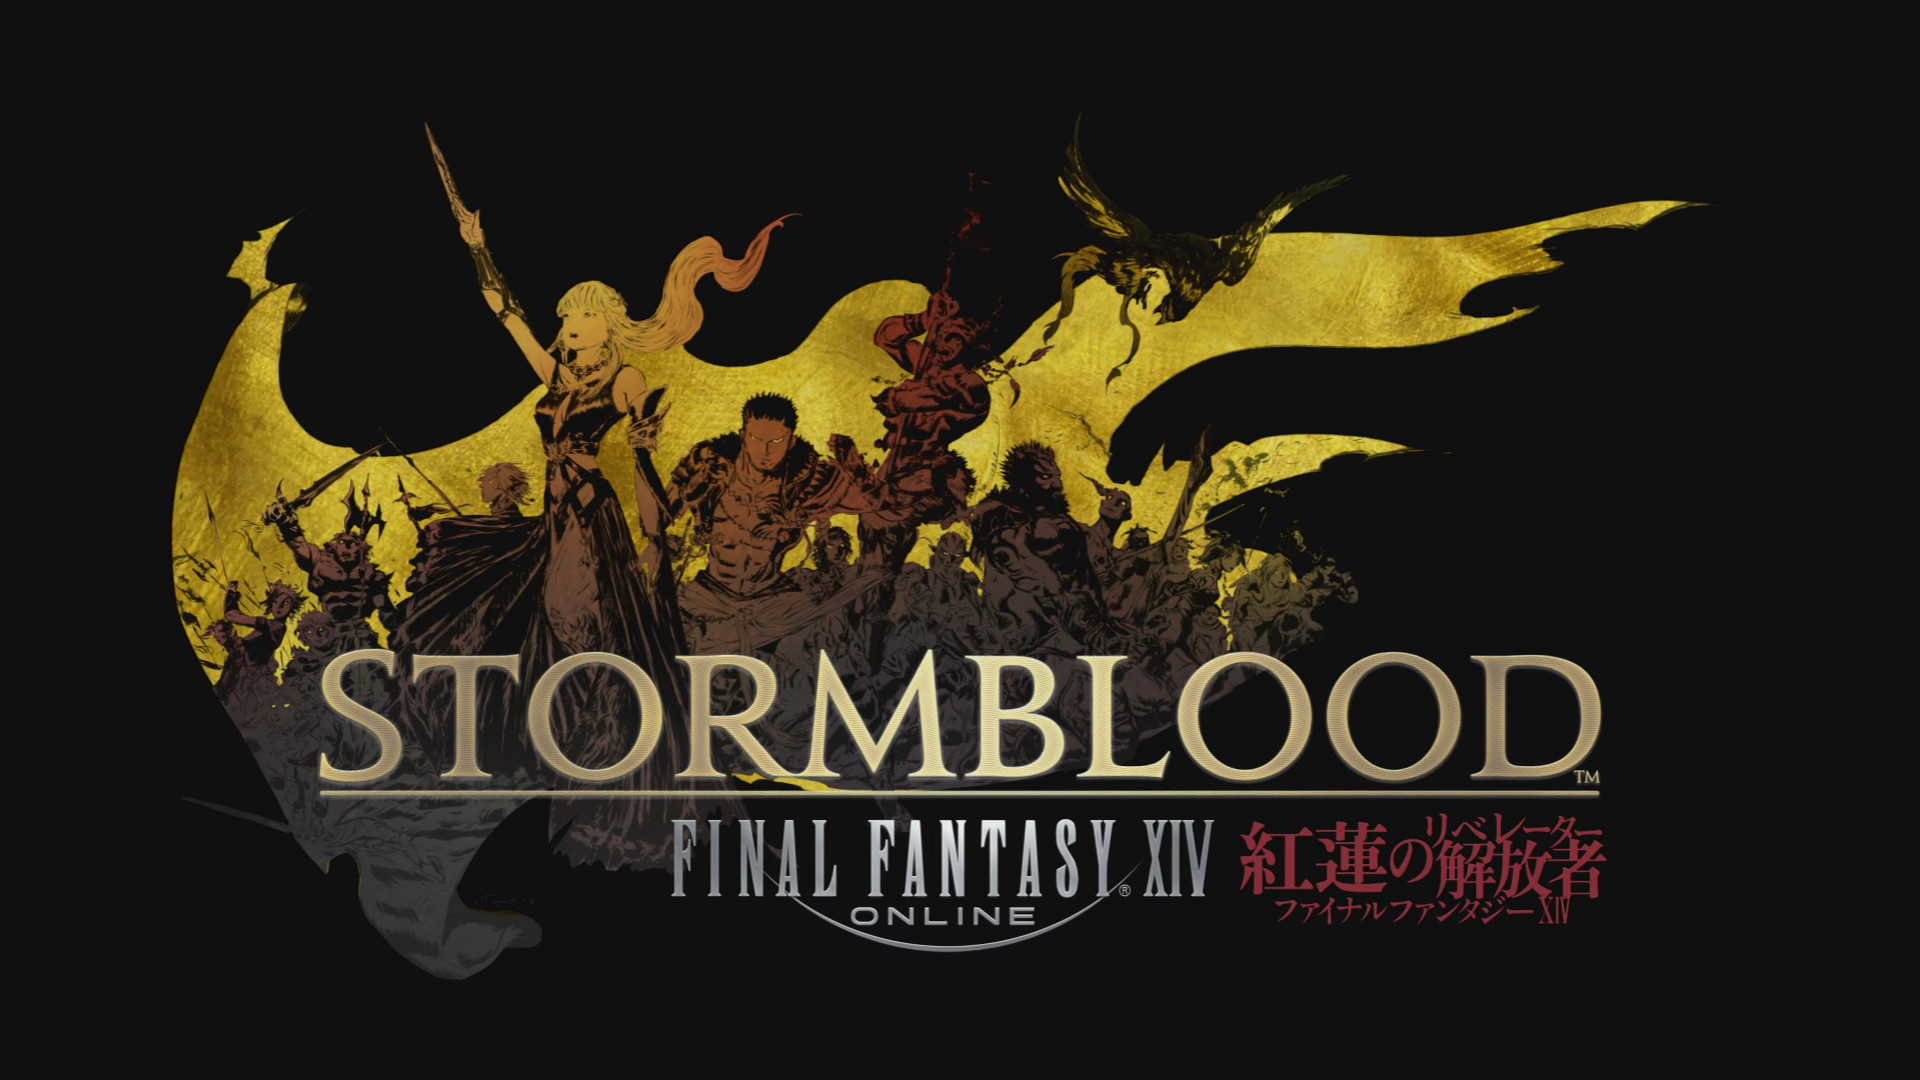 1920x1080 Final Fantasy XIV: Stormblood